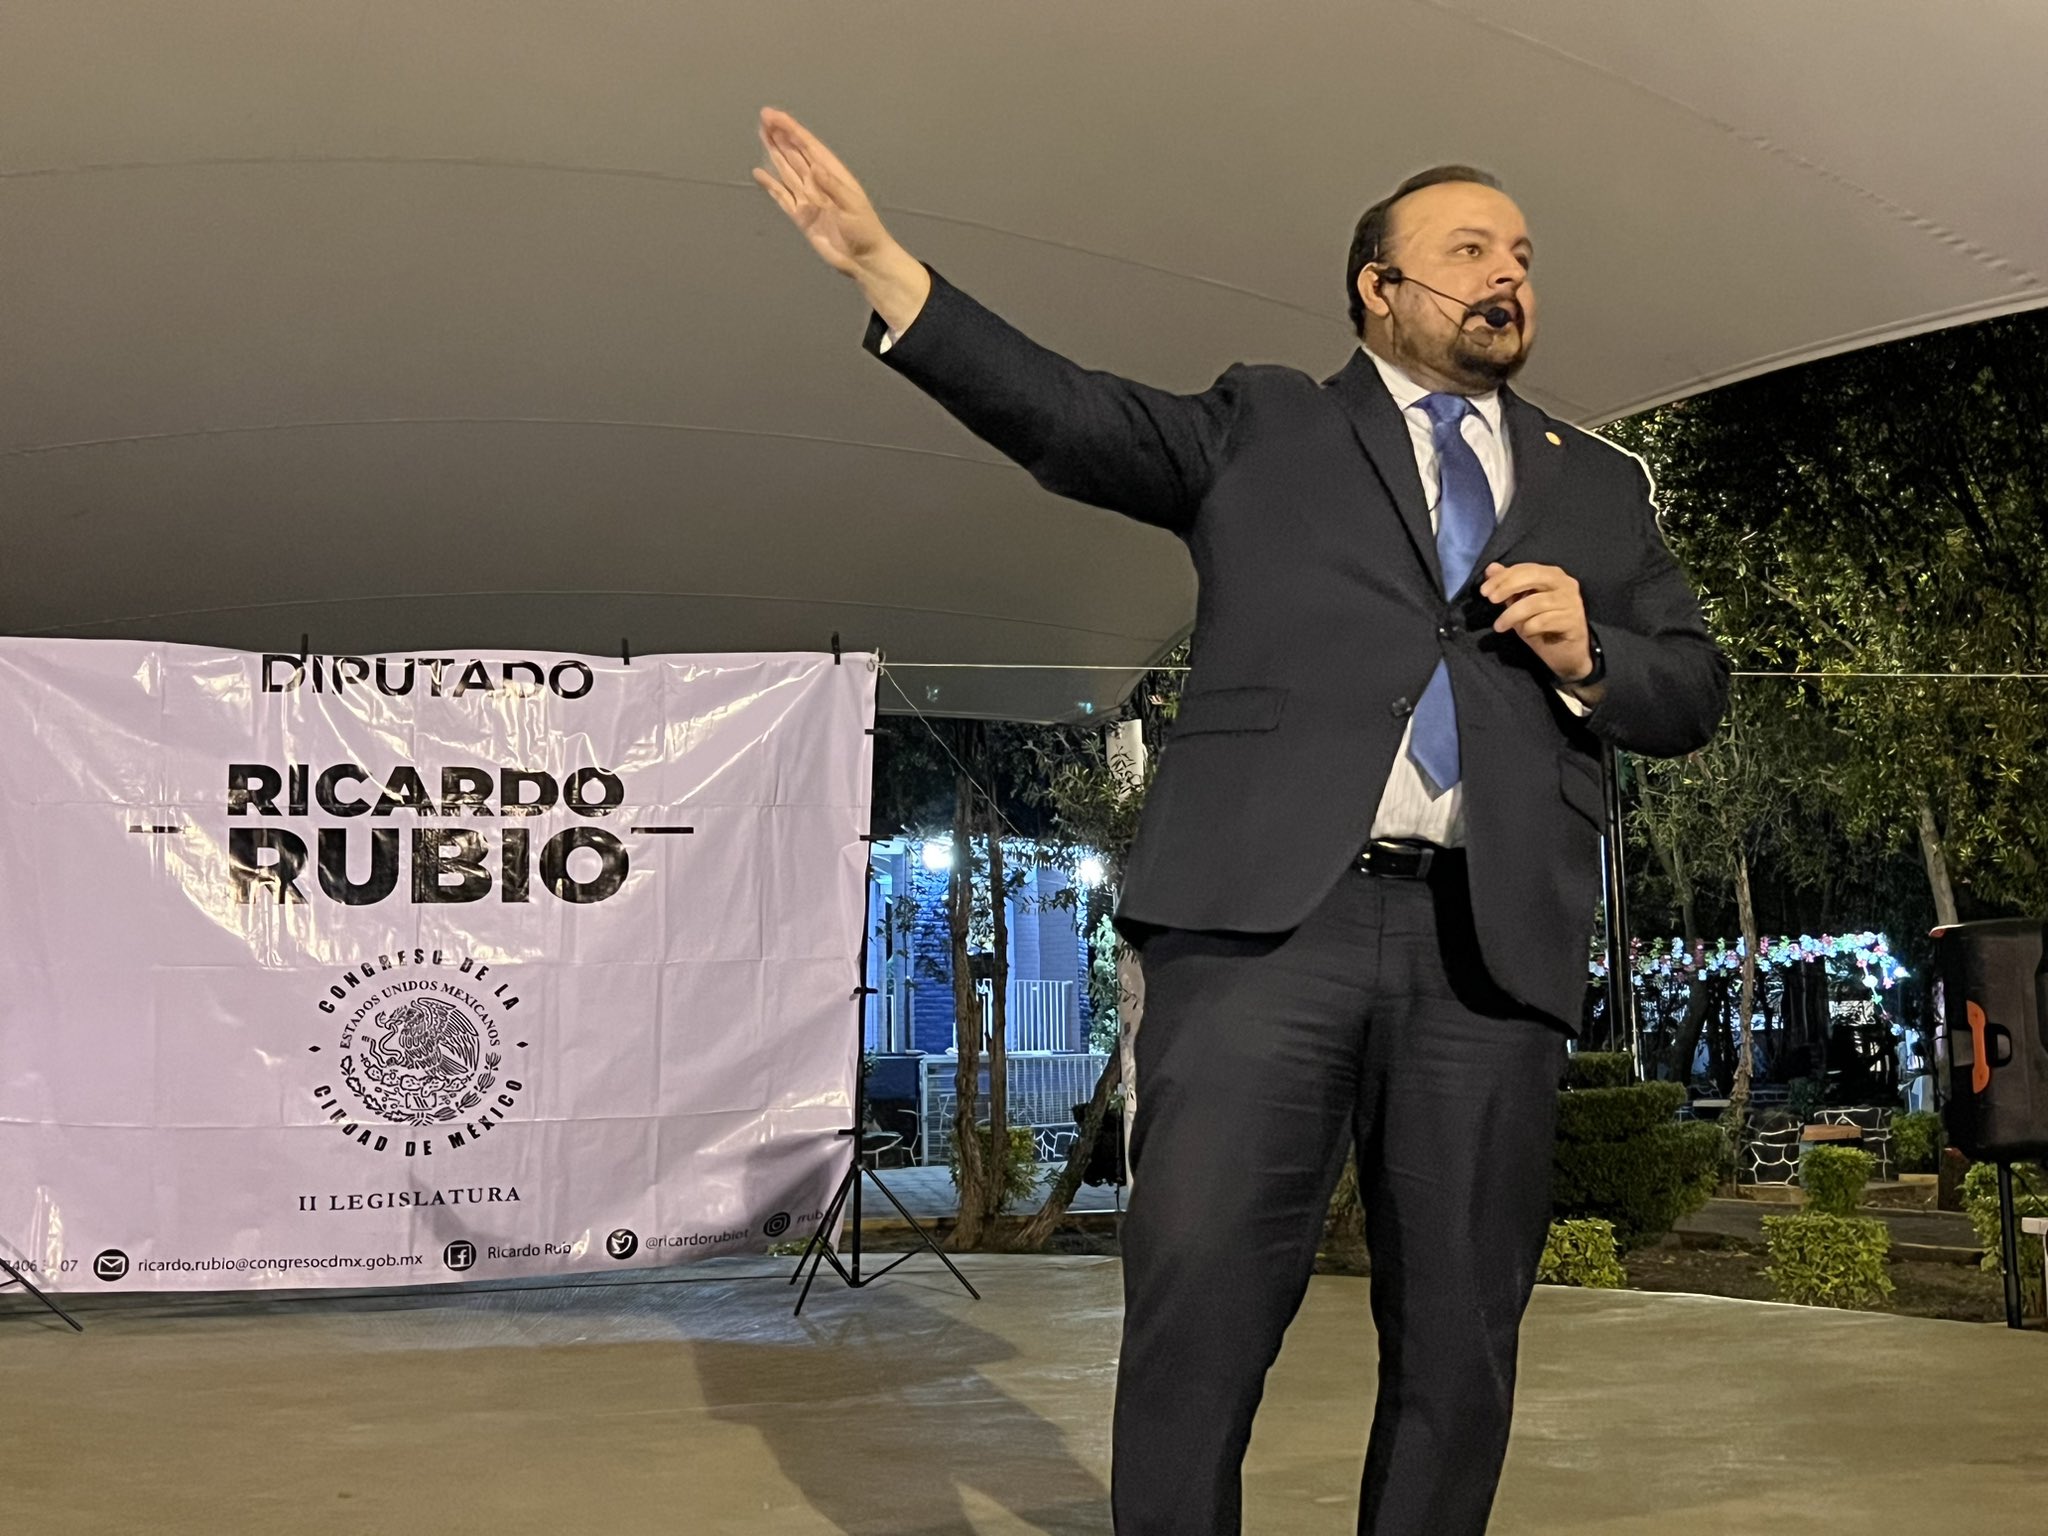 Avanza denuncia en contra del diputado Ricardo Rubio